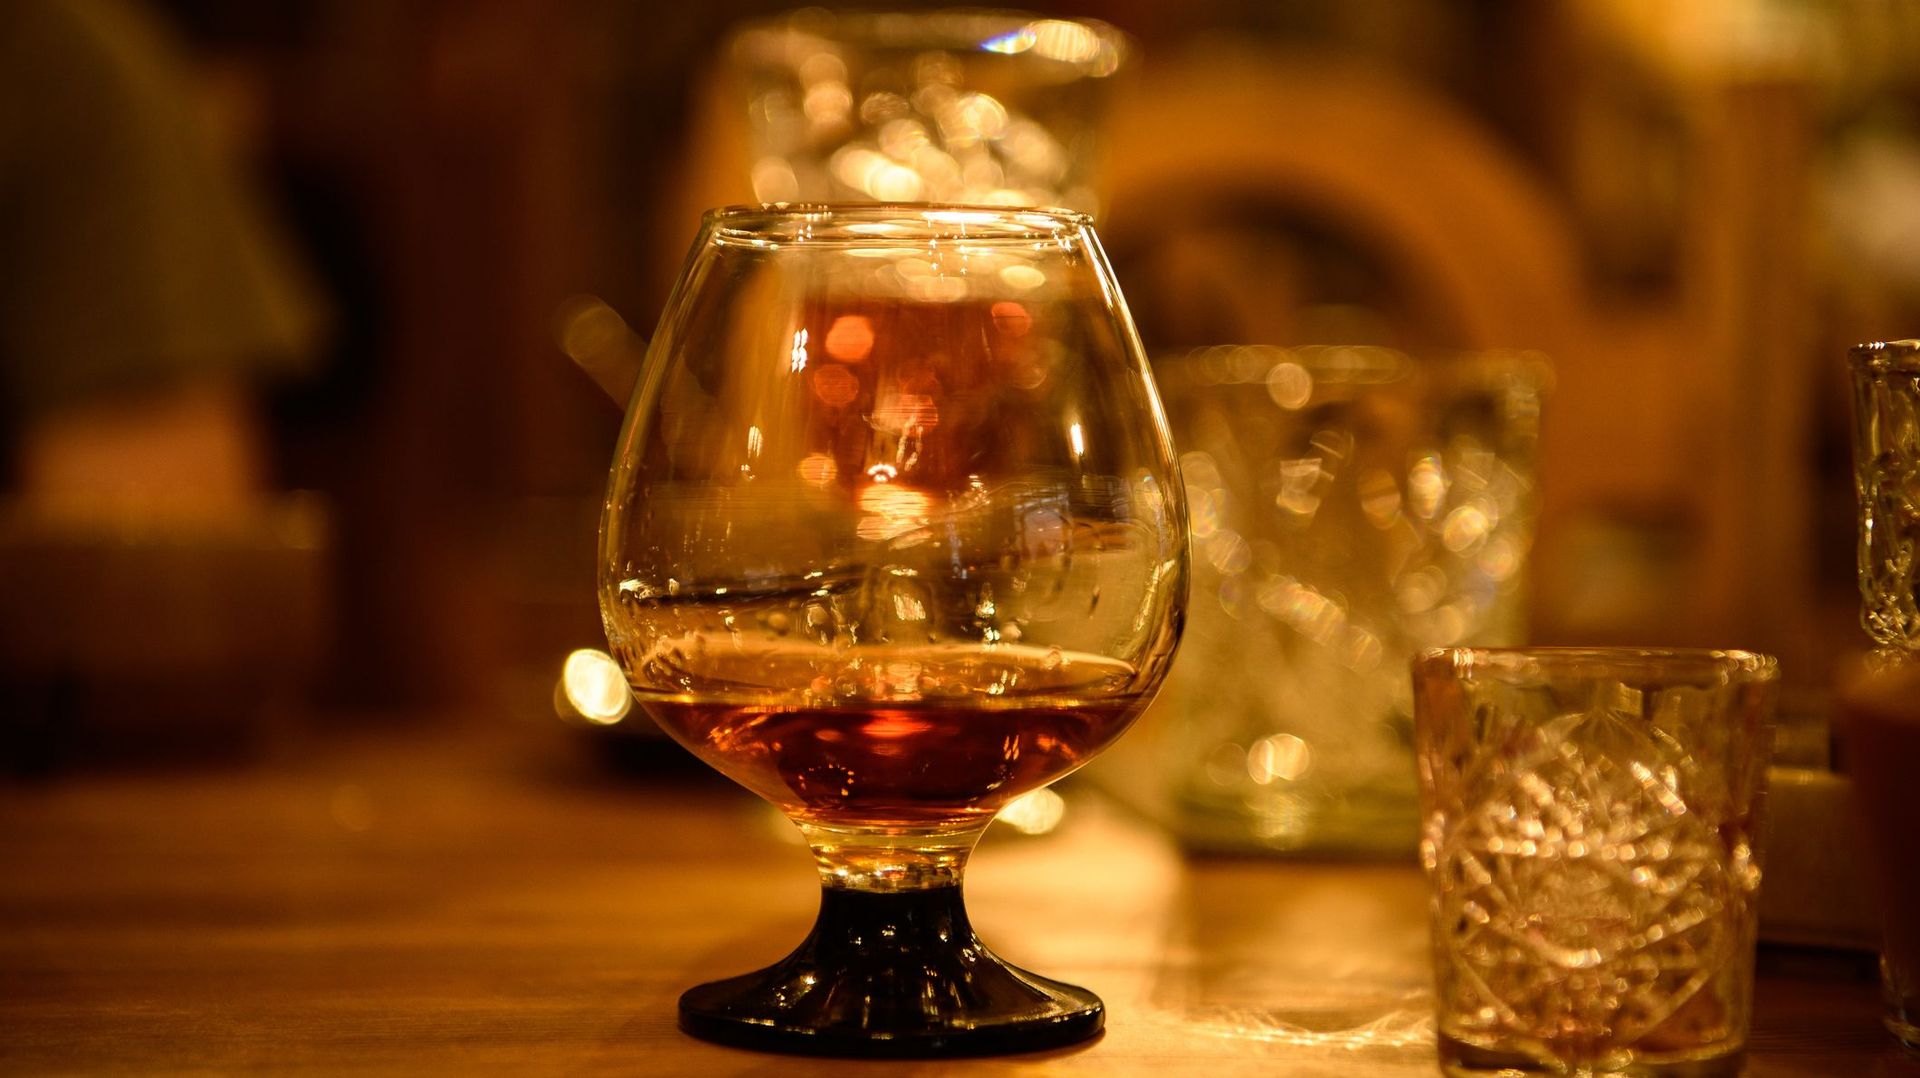 "Cognac" arménien, "champagne" californien : la difficile question des appellations protégées d’alcool dans le monde